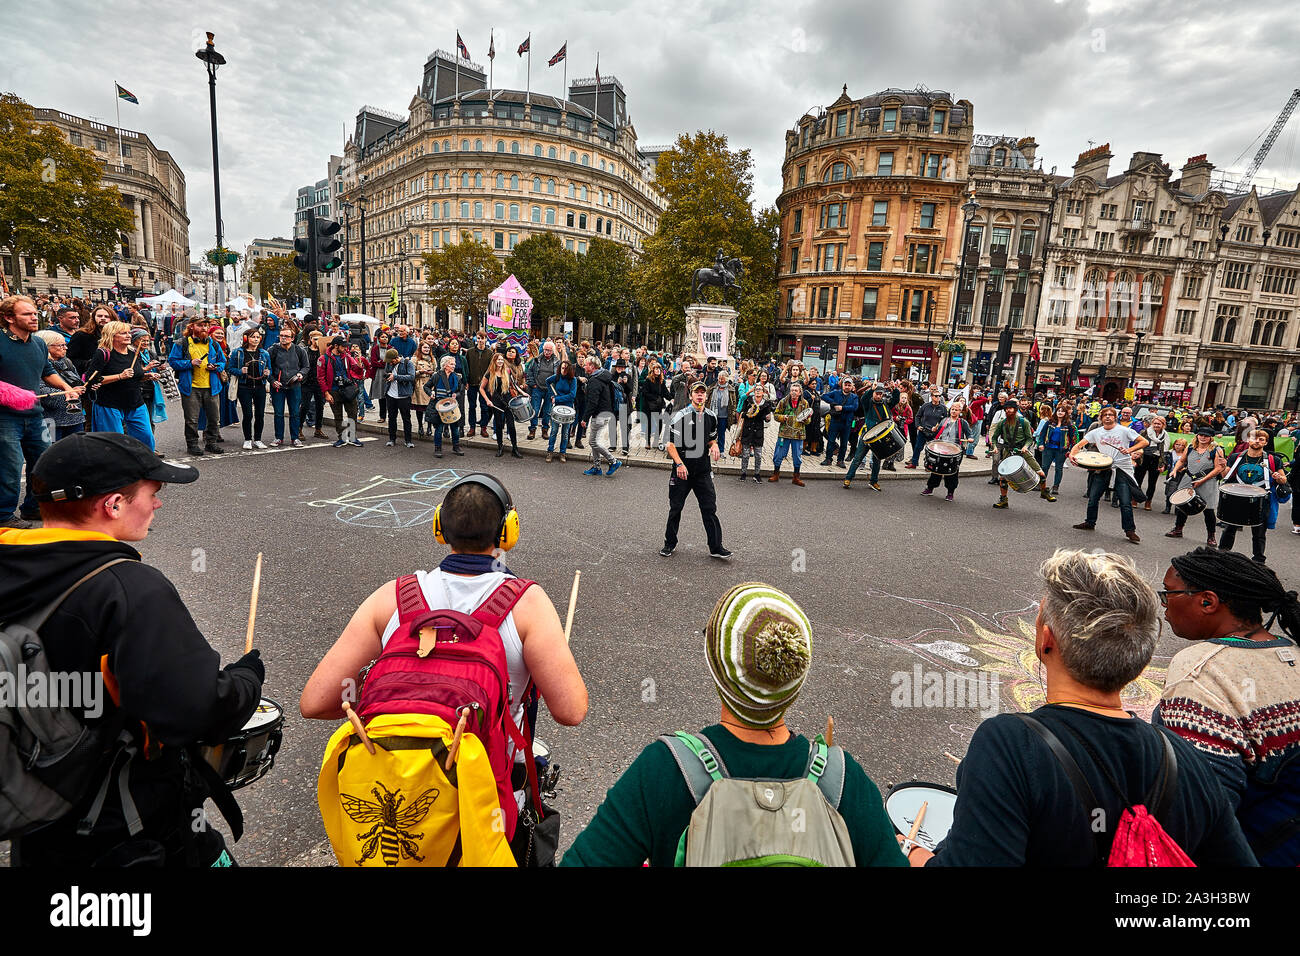 Londres, Reino Unido - Oct 8, 2019: Un hombre conduce tamborileros en una improvisada pantalla en el segundo día de una ocupación de Trafalgar Square por activistas de extinción rebelión. Foto de stock